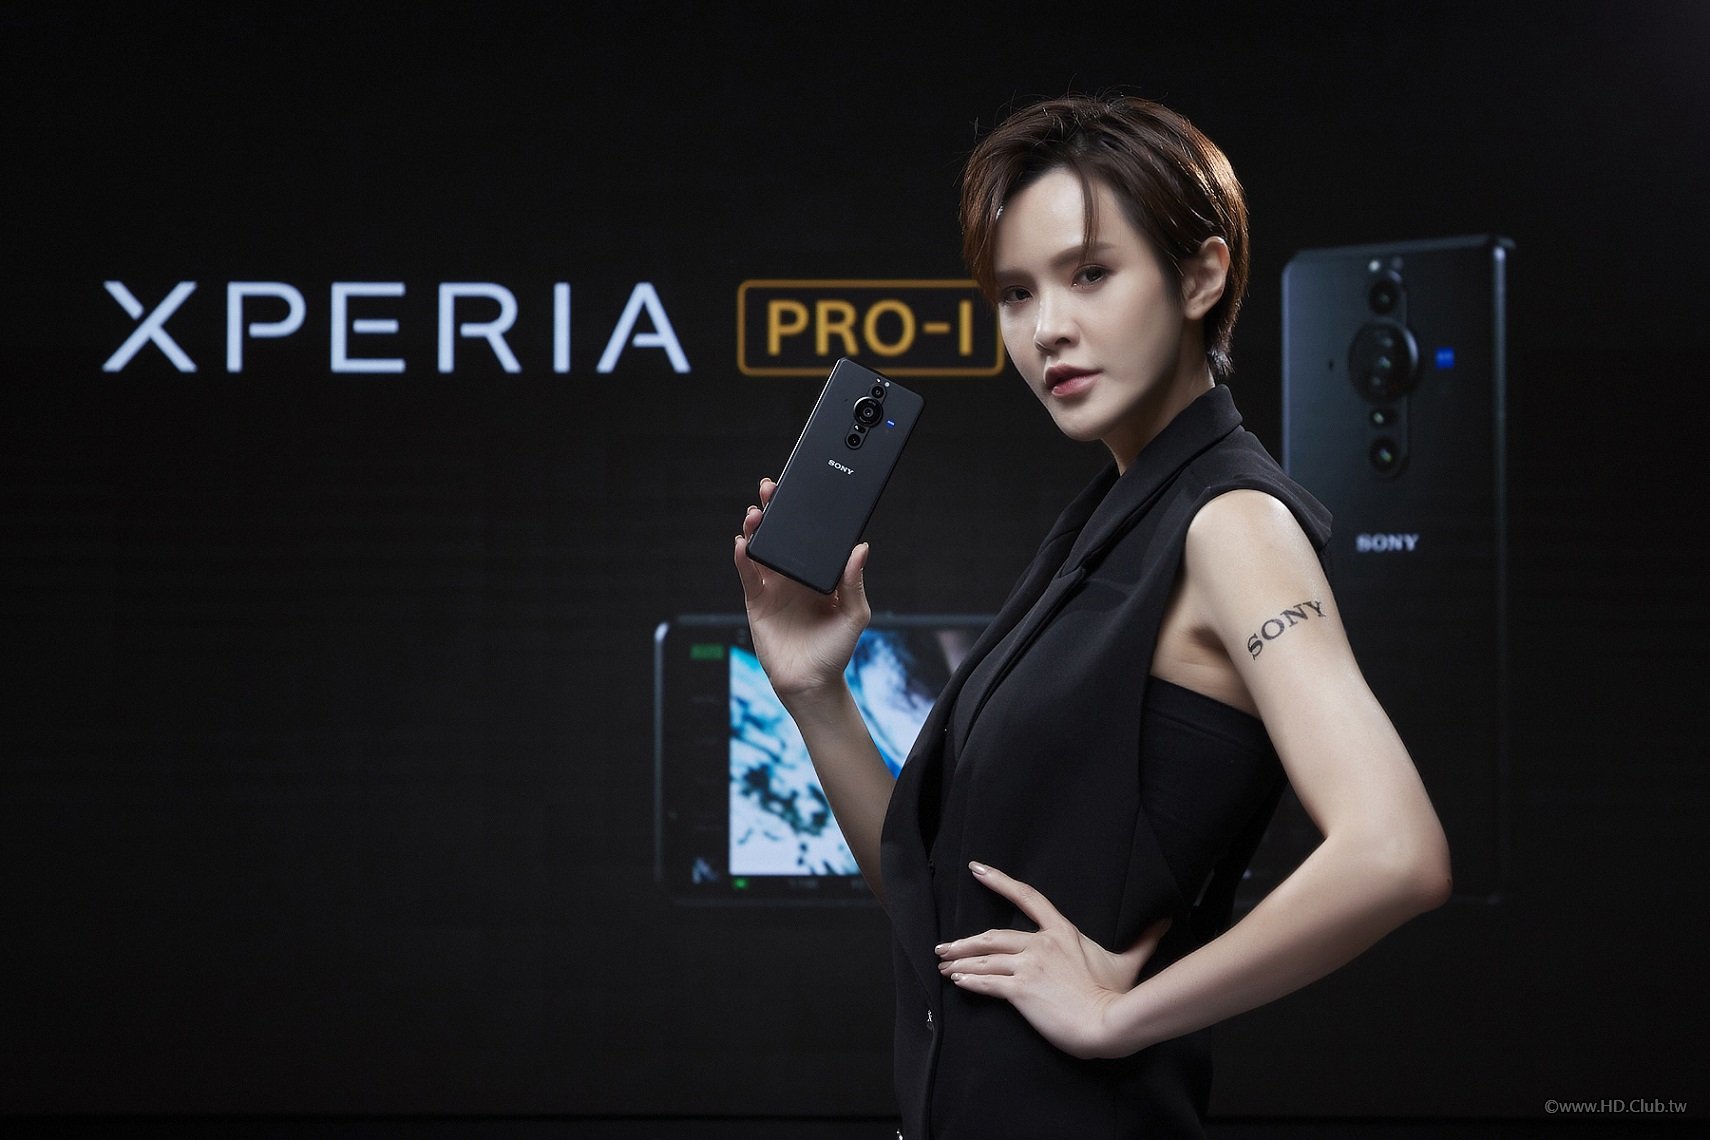 圖說二、Xperia PRO-I 為全球首款搭載1.0型感光元件具備相位偵測自動對焦(PDAF)的真相機手機.jpg